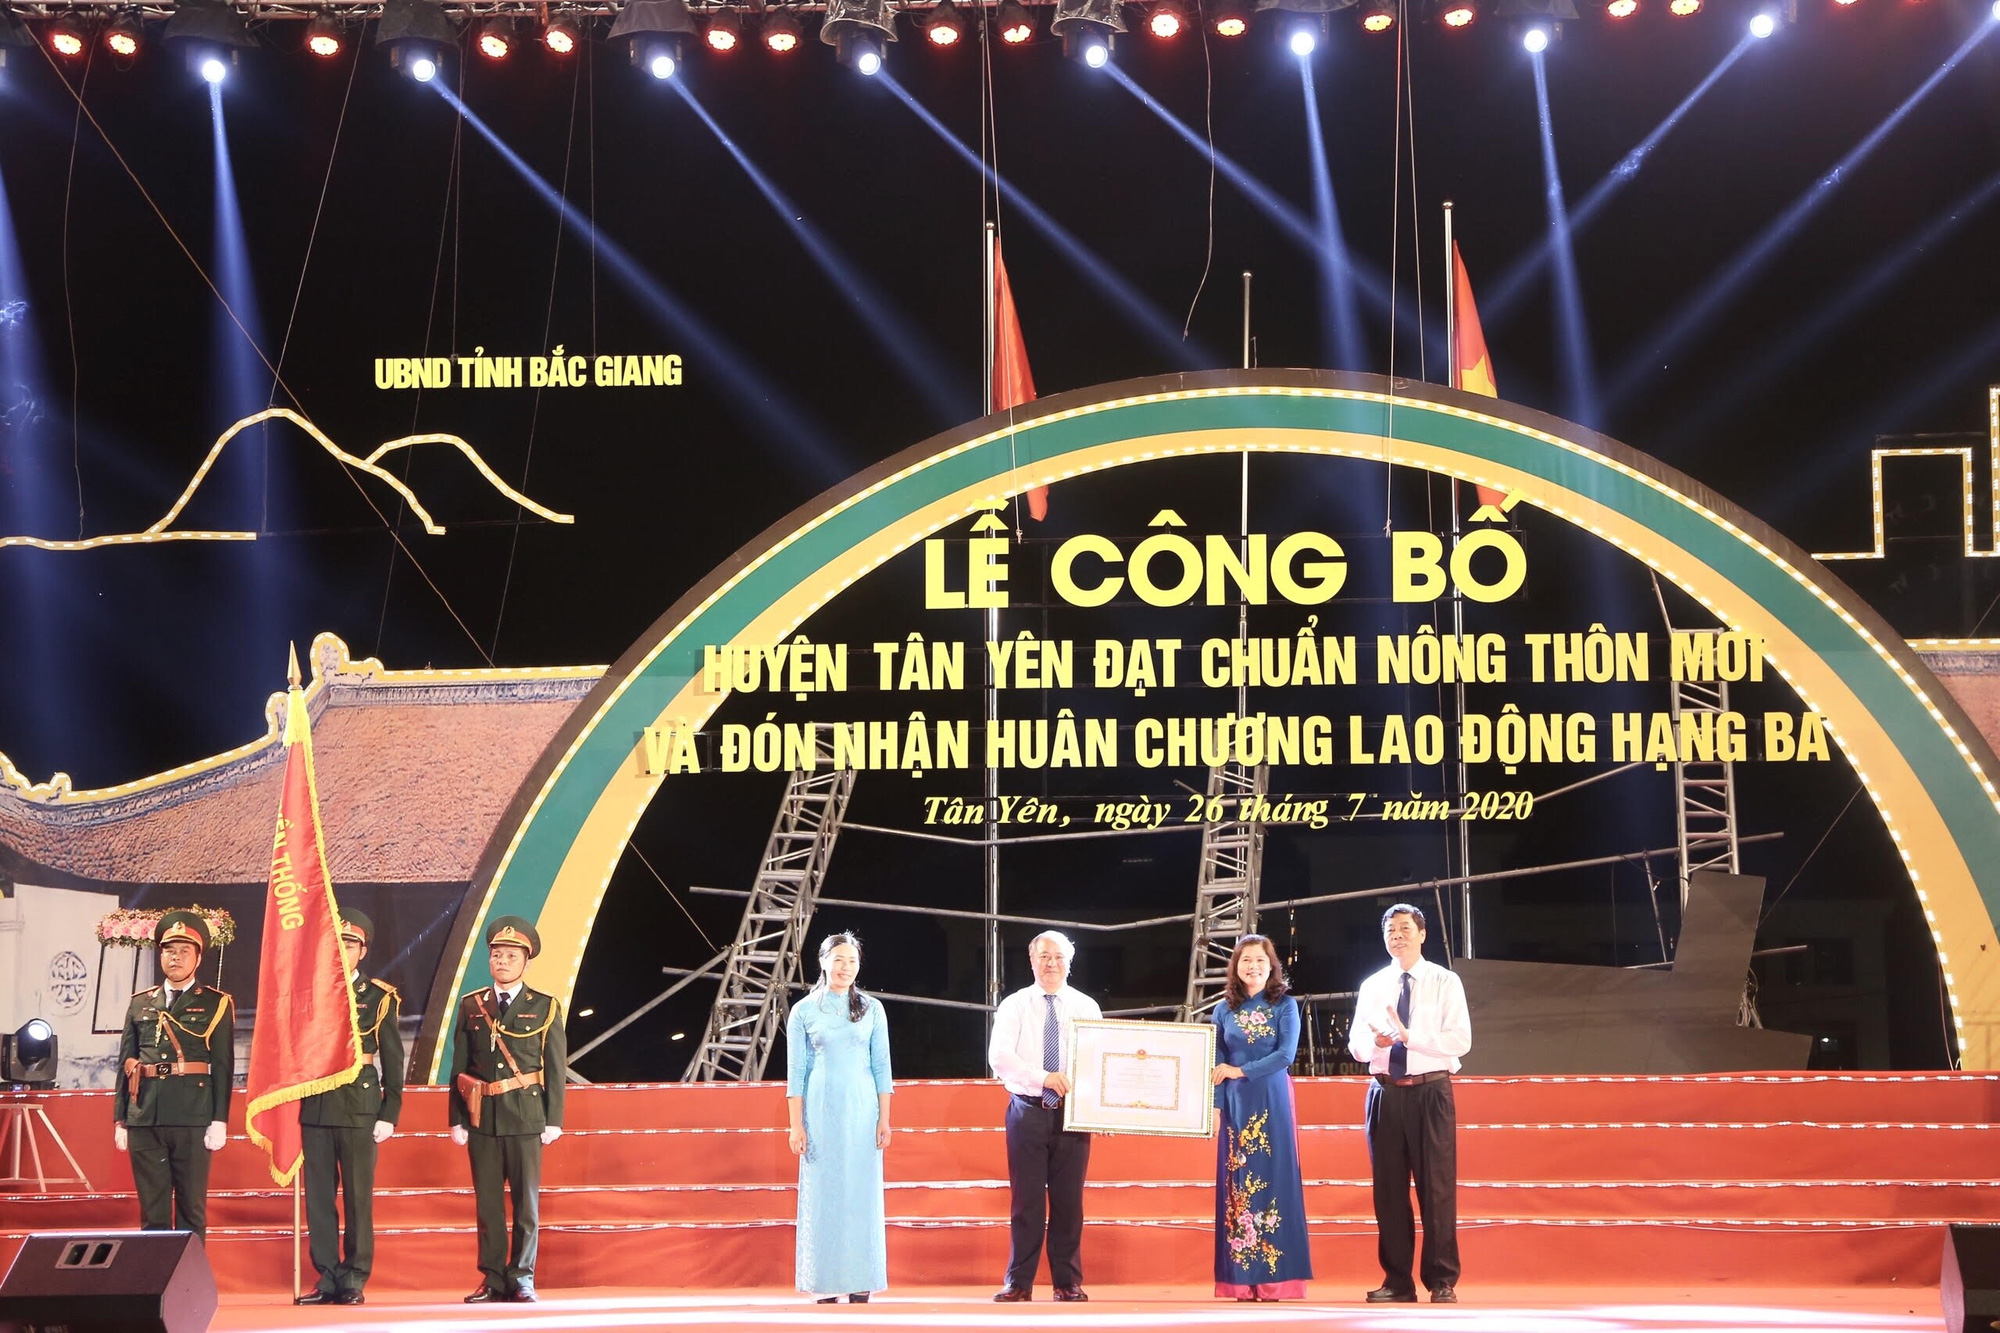 Bắc Giang: Huyện Tân Yên đón Bằng công nhận huyện đạt chuẩn nông thôn mới - Ảnh 2.